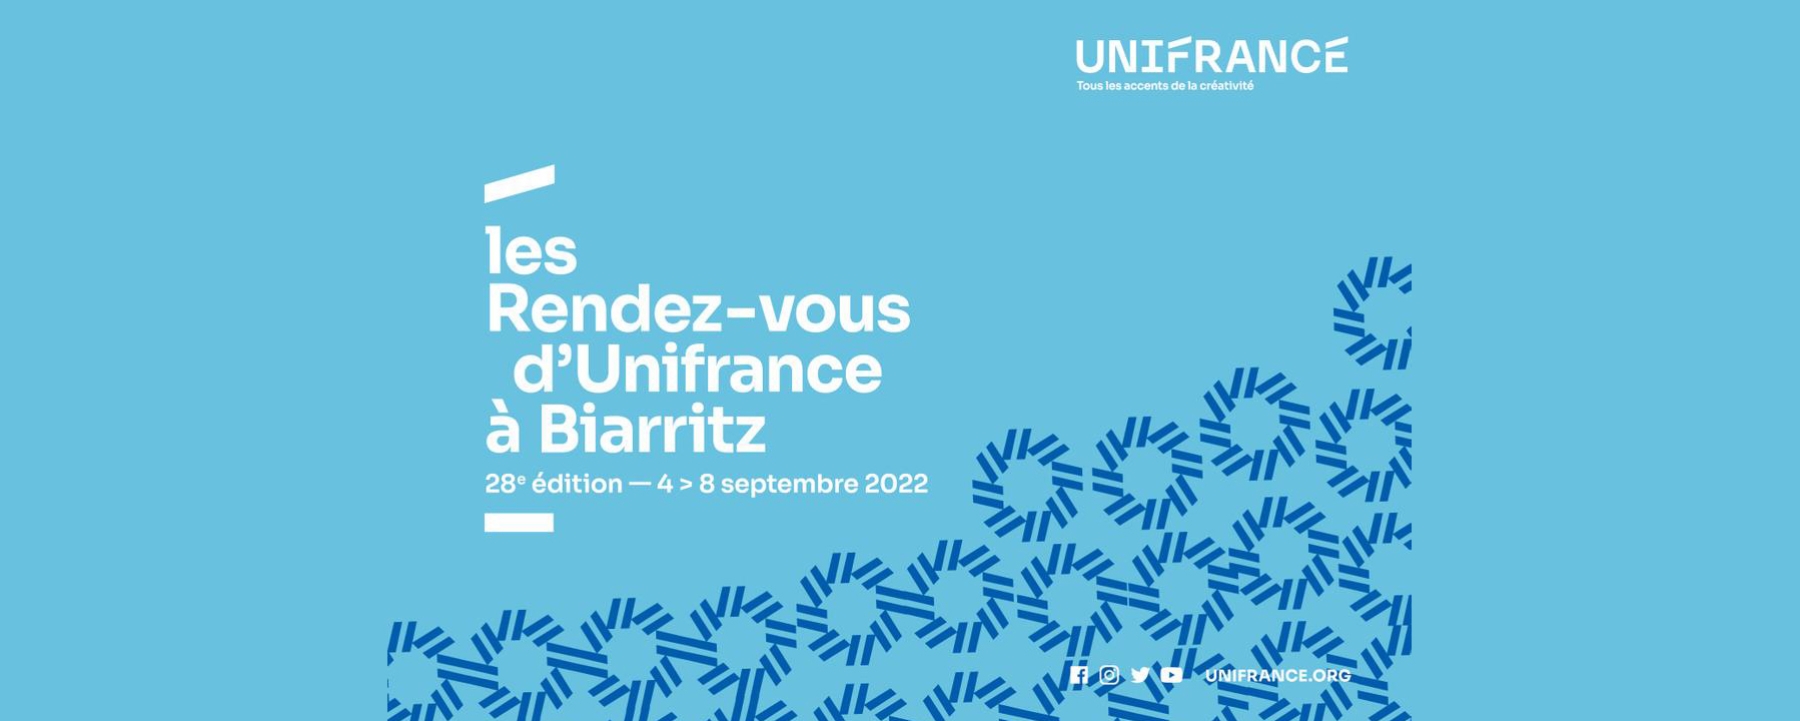 Rendez-vous d'Unifrance à Biarritz 2022